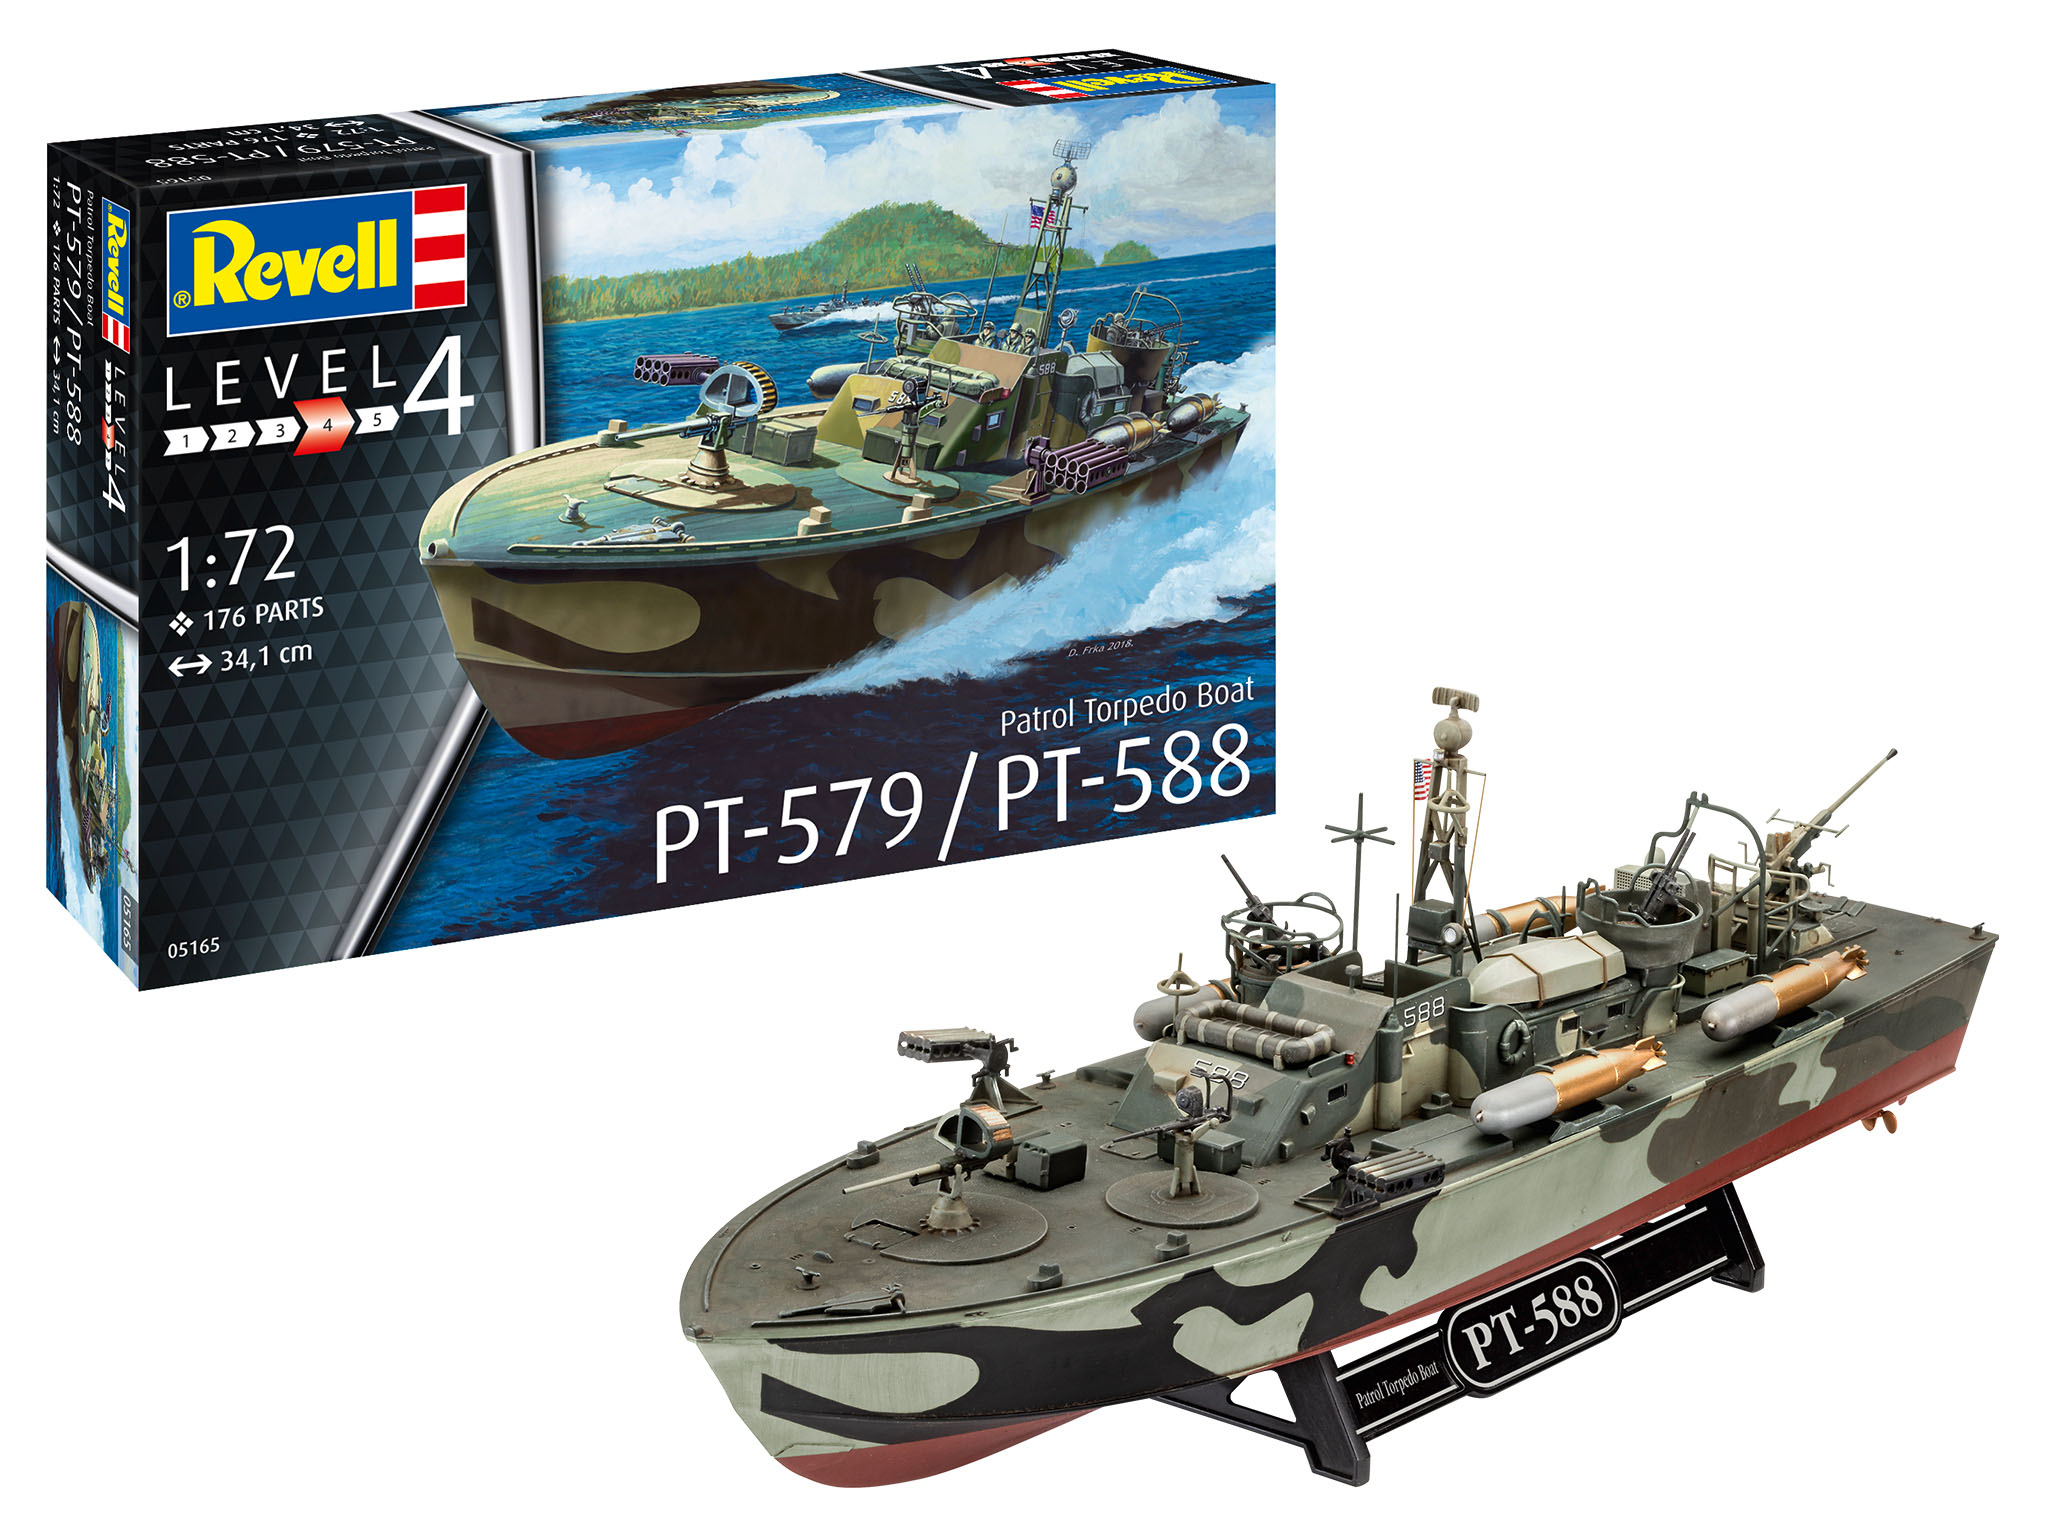 Revell Patrol Torpedo Boat PT-588/PT-57 in 1:72 bouwpakket